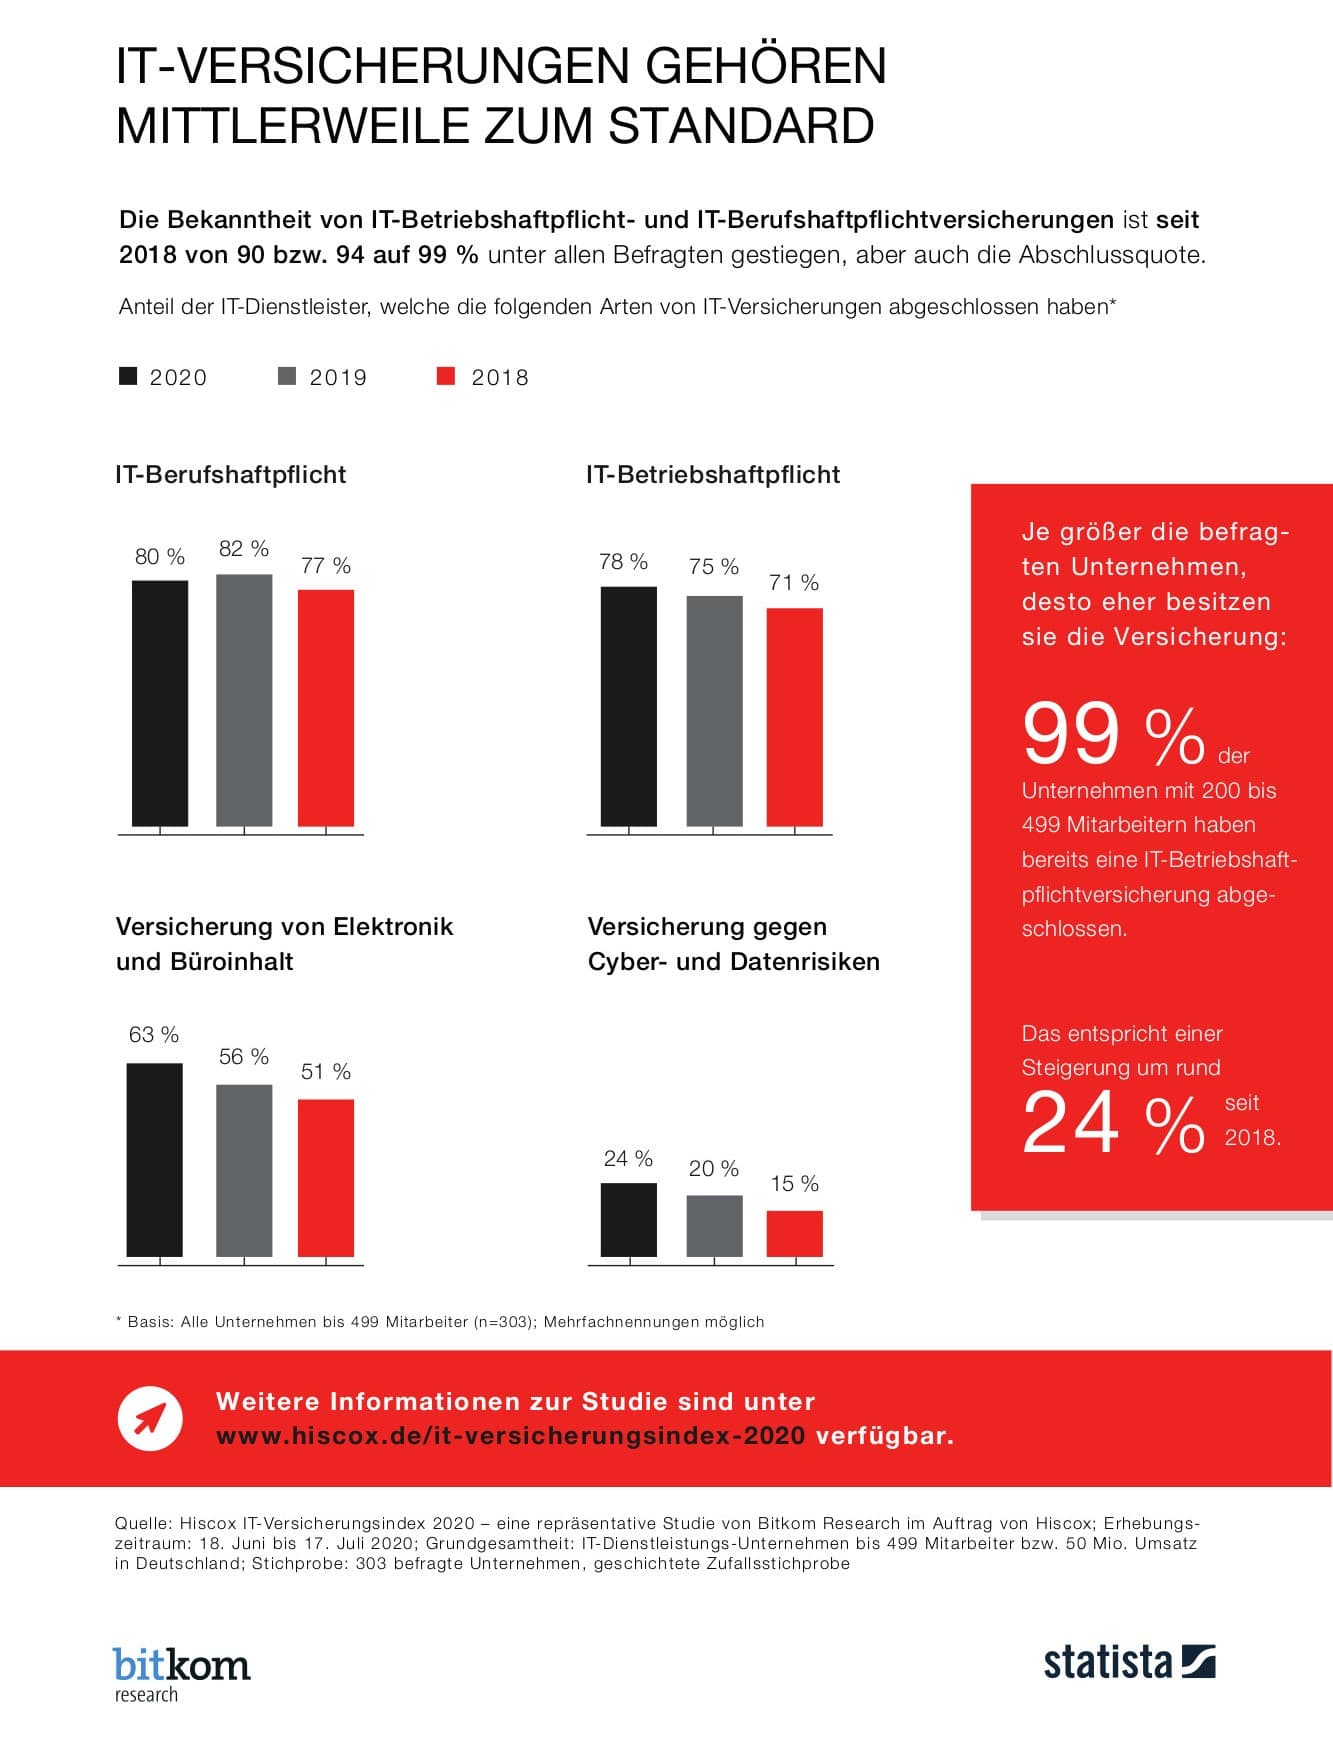 infografik hiscox versicherungsstudie it dienstleistungsbranche teil3